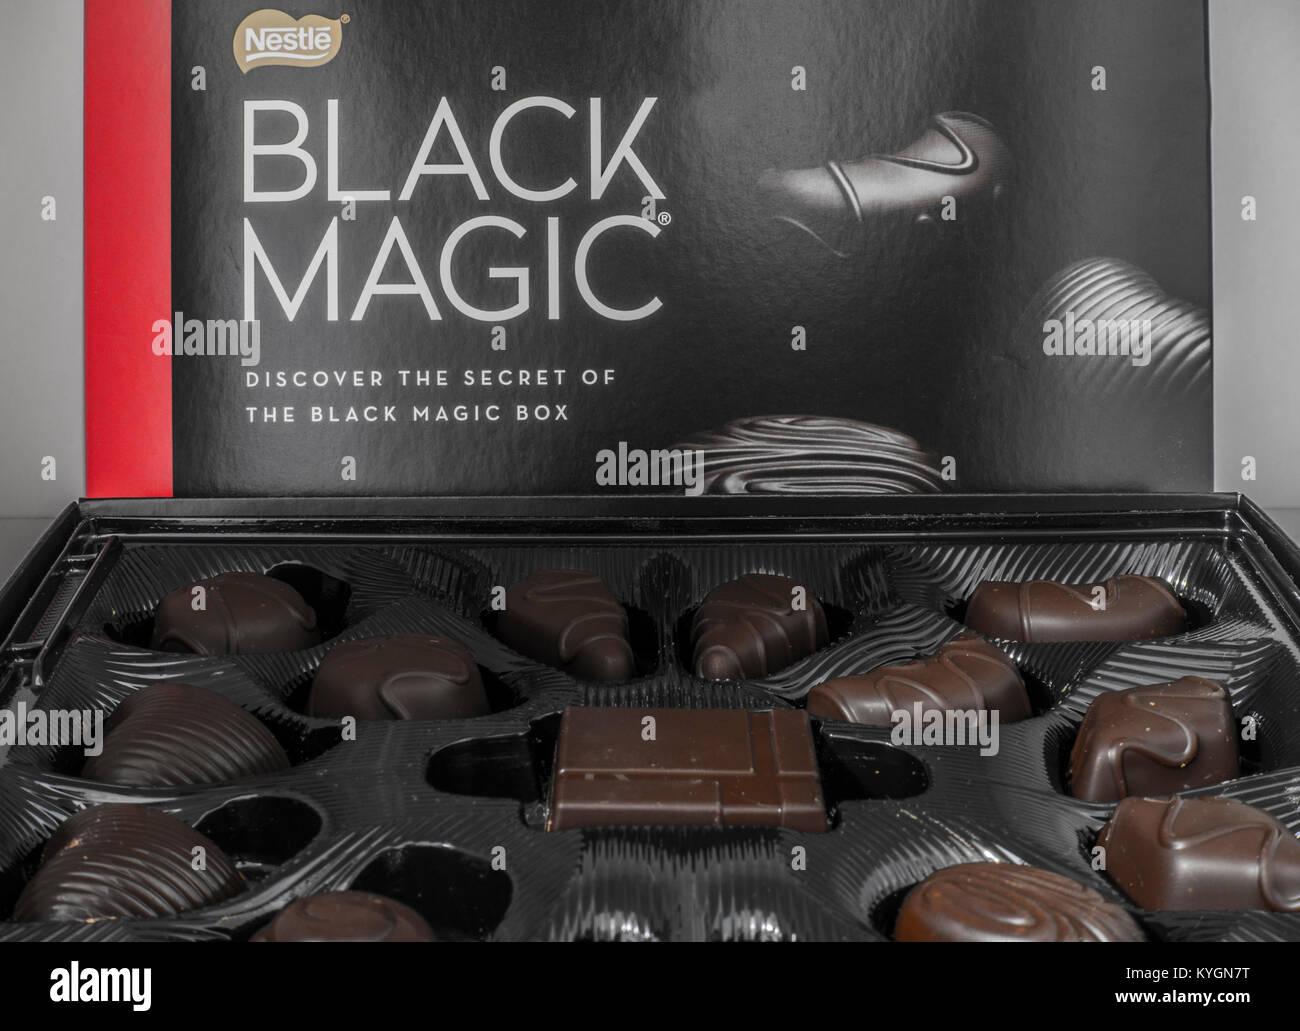 Nestlé die Schwarze Magie open box von dunkler Schokolade. Detailansicht der verschieden geformte Schokolade Auswahl zusammen mit der glänzenden Deckel. Britische gemacht. Stockfoto